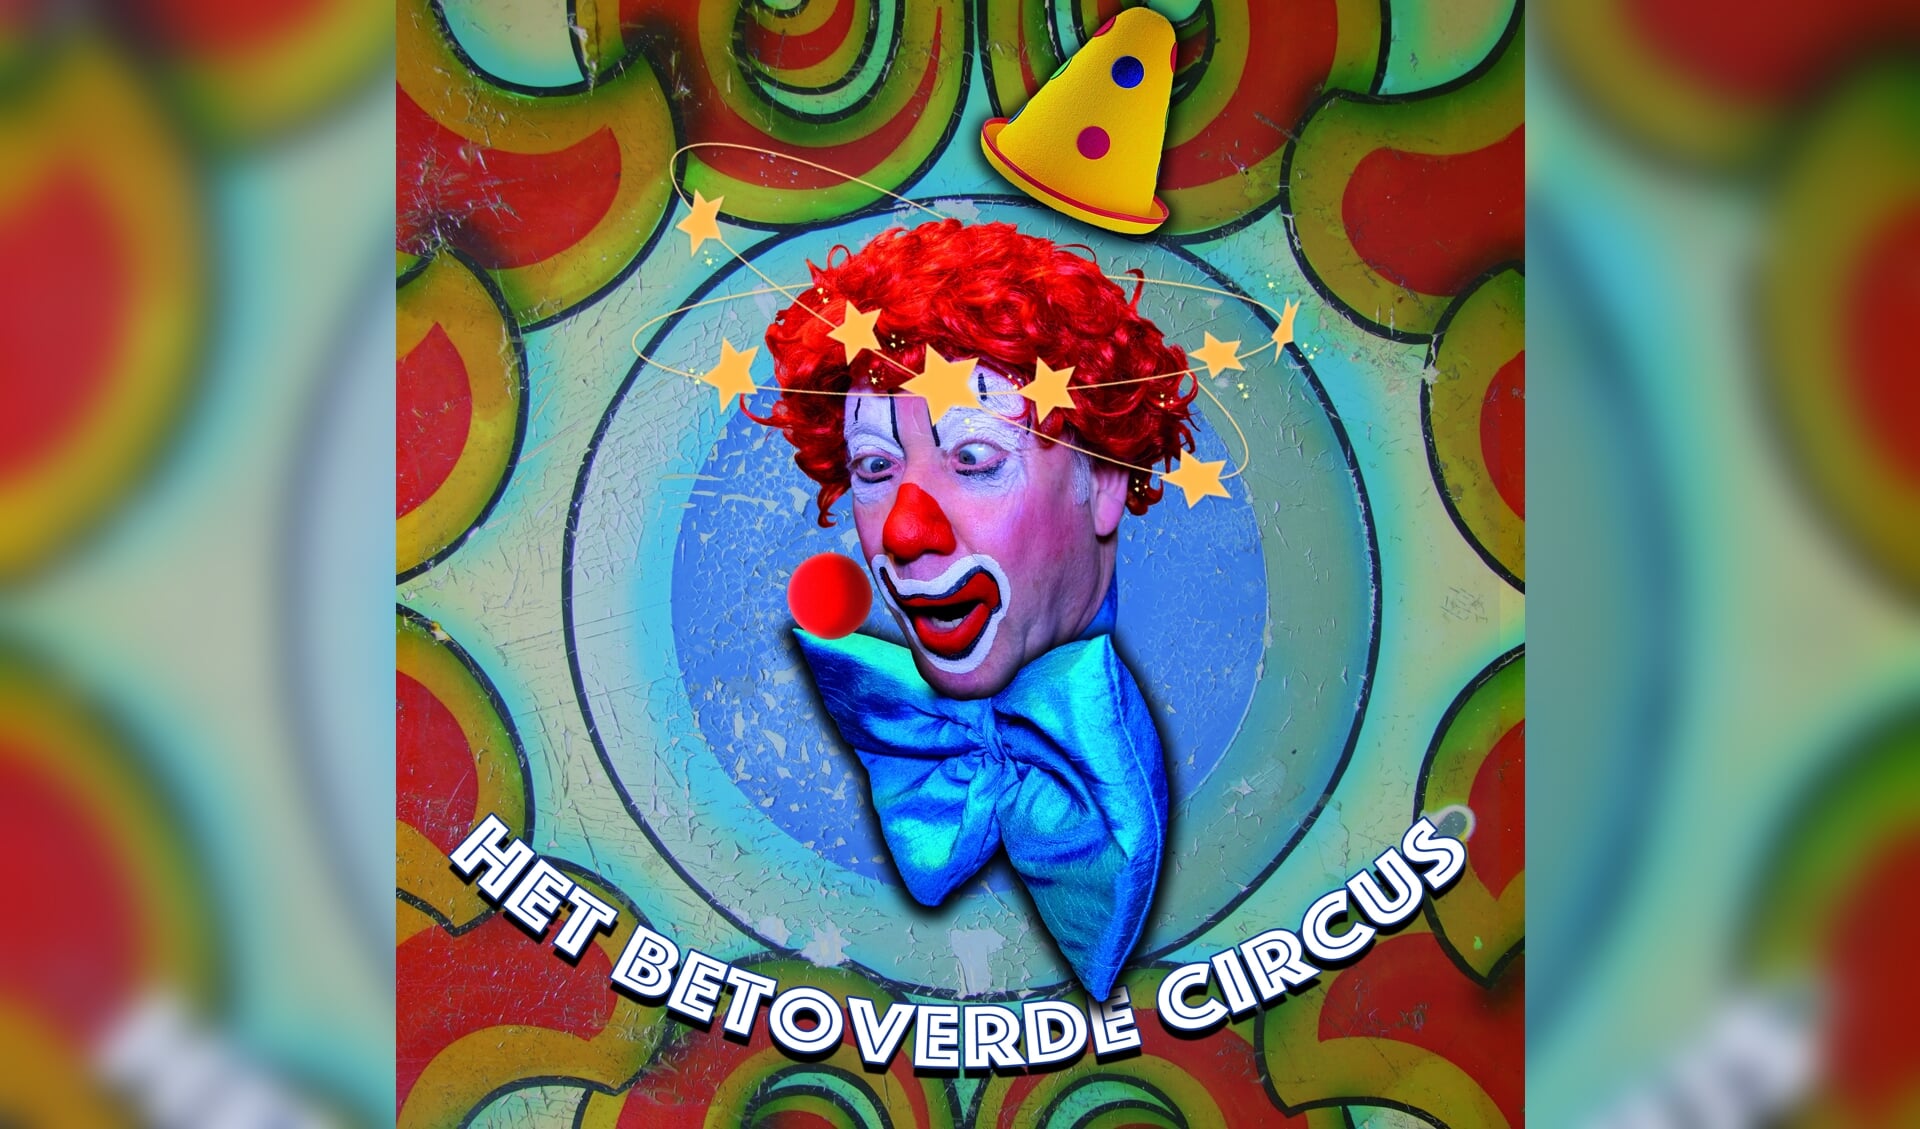 Aankondiging Het betoverde circus